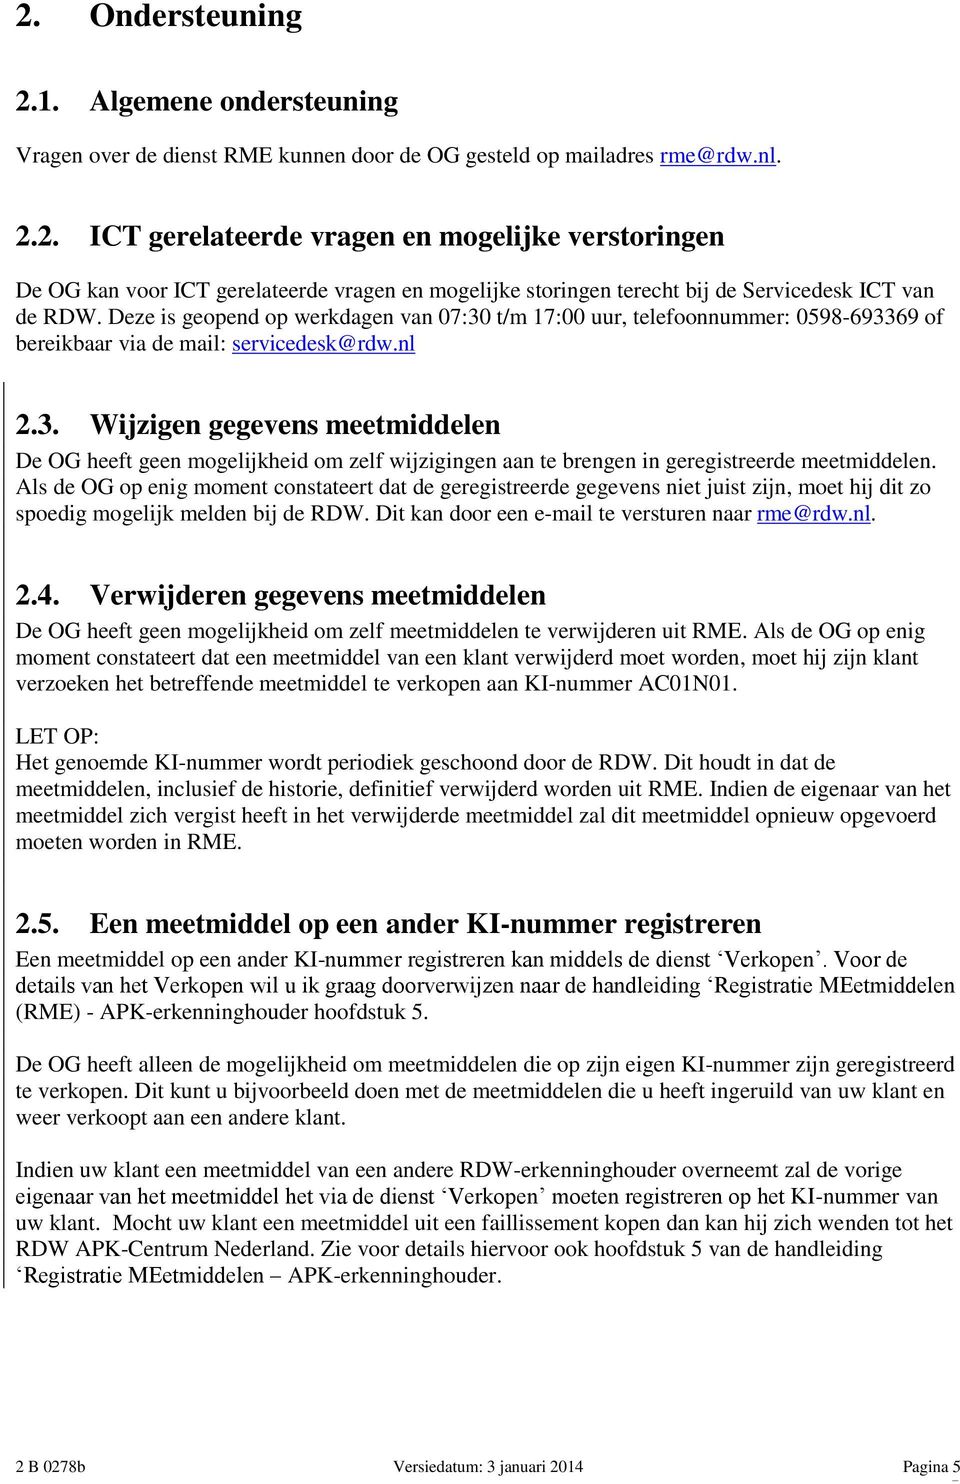 Als de OG op enig moment constateert dat de geregistreerde gegevens niet juist zijn, moet hij dit zo spoedig mogelijk melden bij de RDW. Dit kan door een e-mail te versturen naar rme@rdw.nl. 2.4.